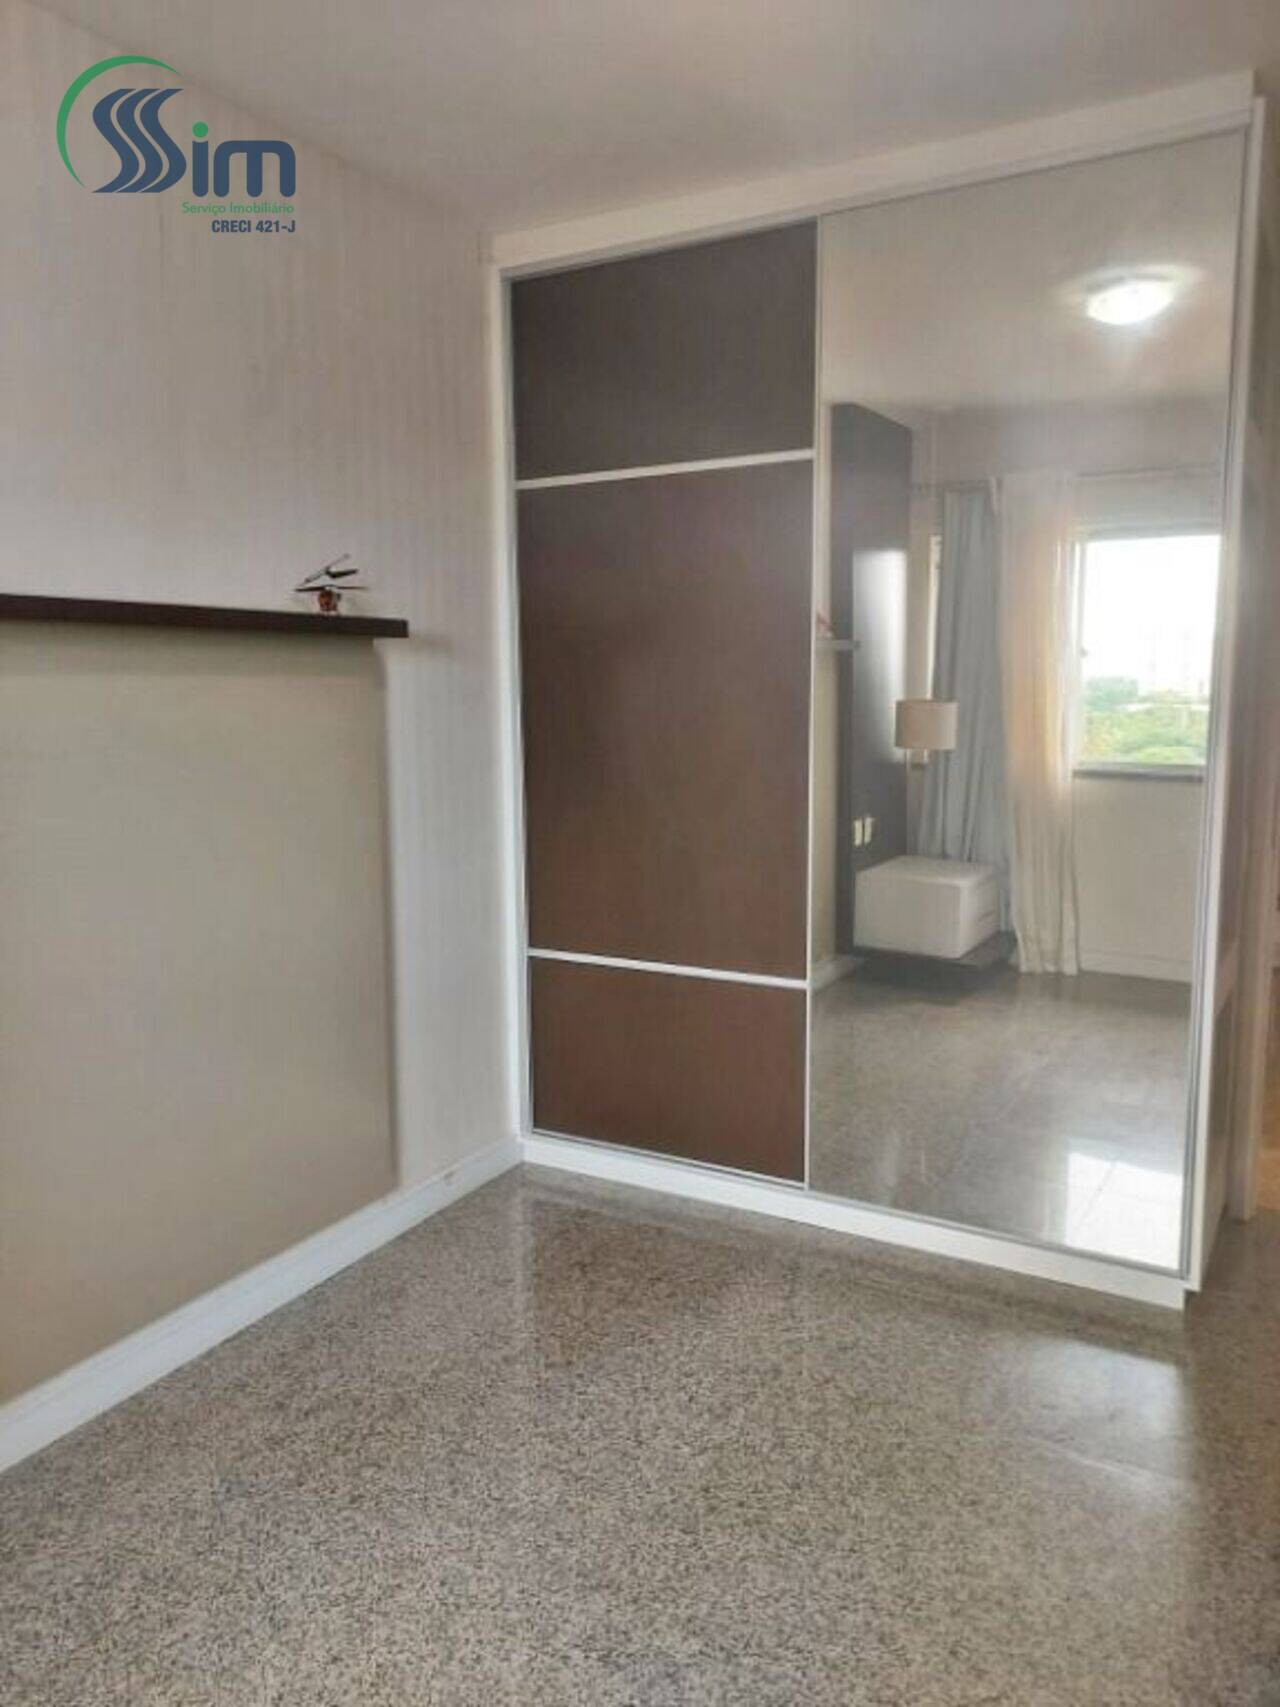 Apartamento Engenheiro Luciano Cavalcante, Fortaleza - CE